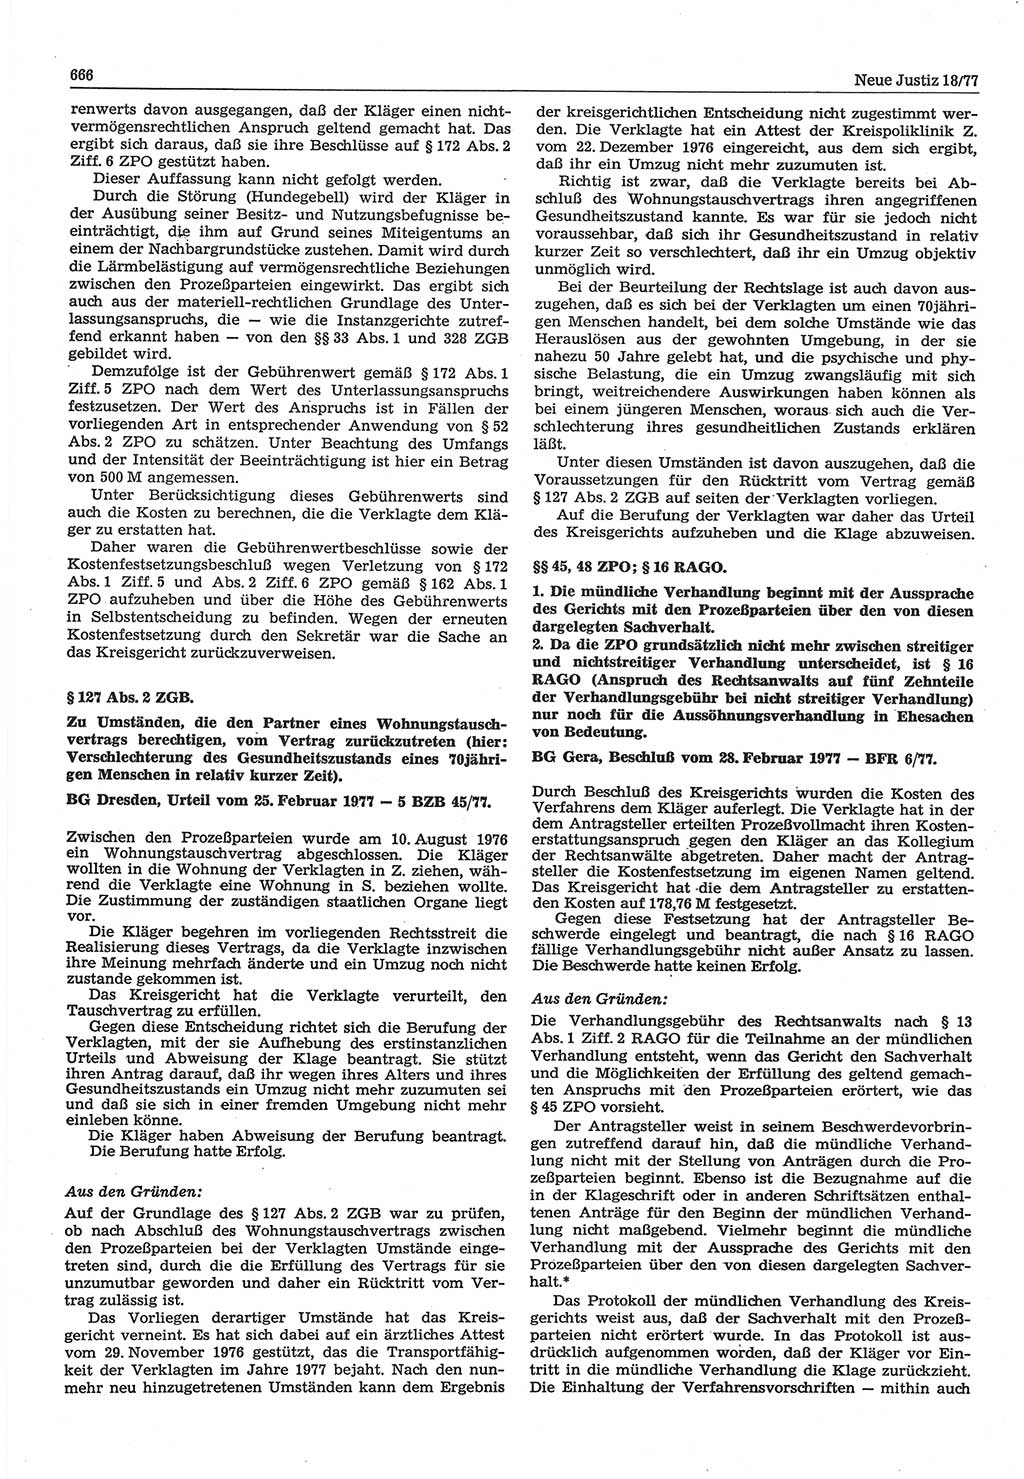 Neue Justiz (NJ), Zeitschrift für Recht und Rechtswissenschaft-Zeitschrift, sozialistisches Recht und Gesetzlichkeit, 31. Jahrgang 1977, Seite 666 (NJ DDR 1977, S. 666)